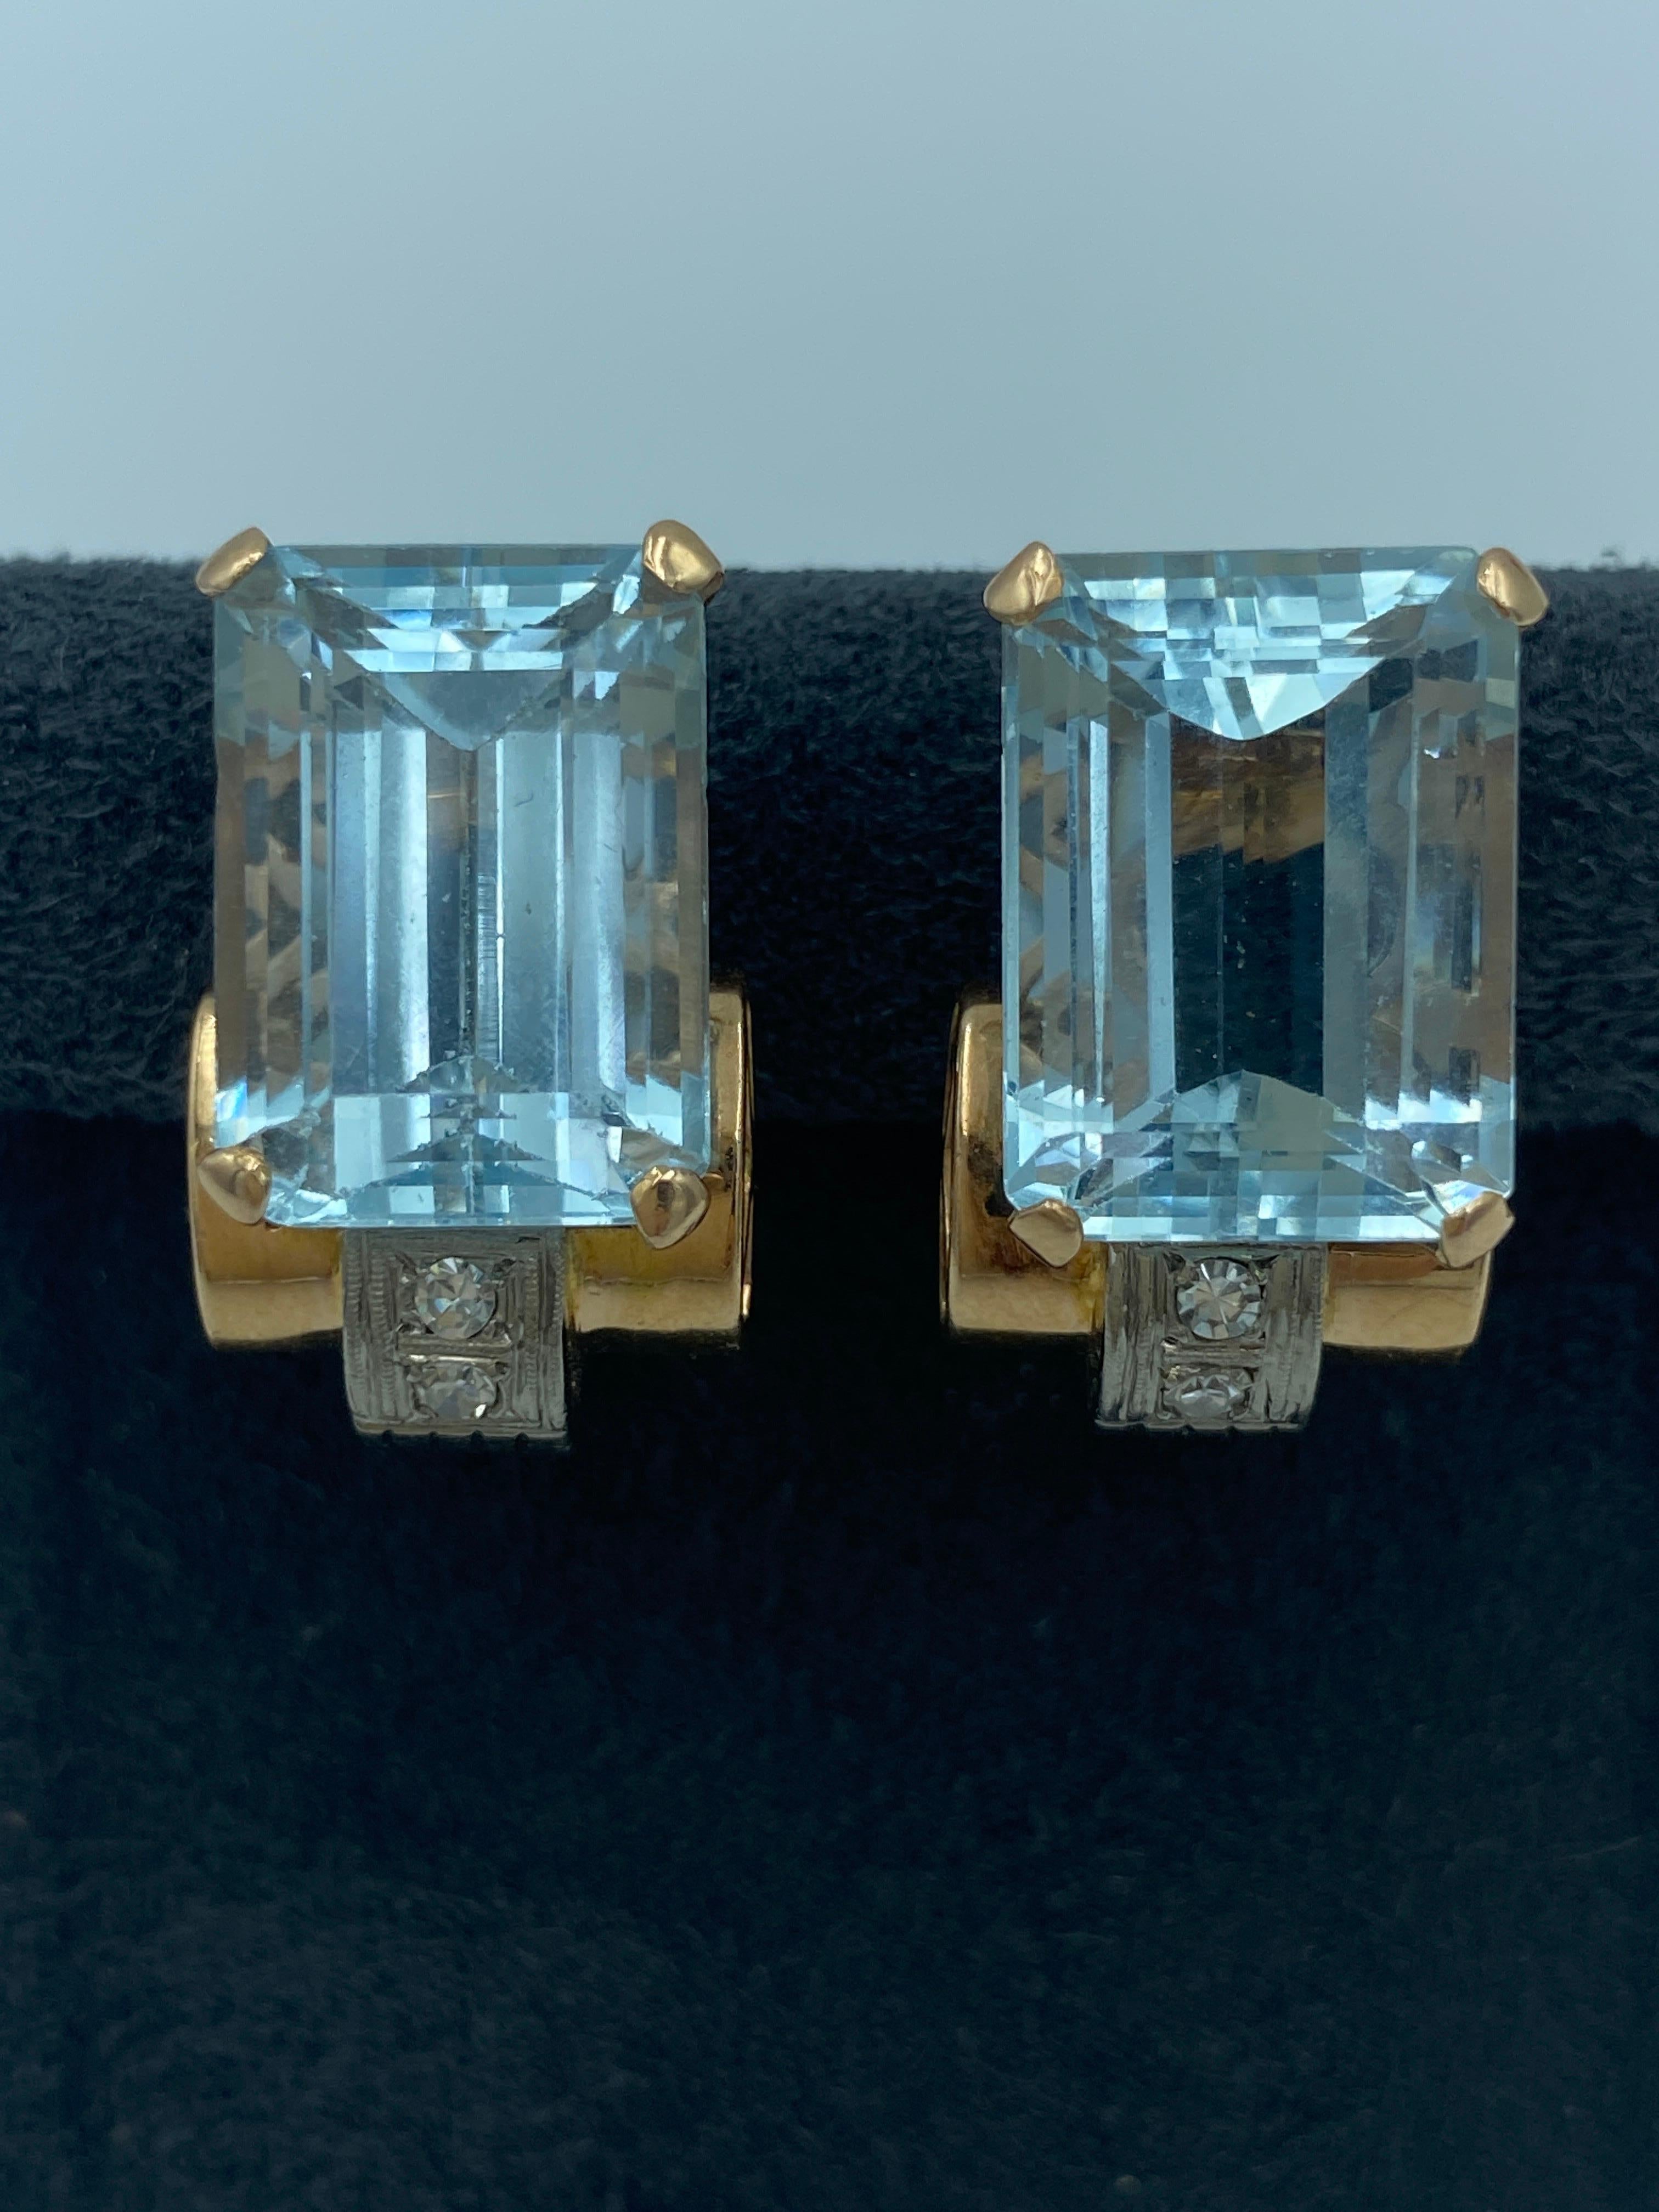 Dieses atemberaubende Paar französischer Ohrringe aus 18-karätigem Gold aus den 1950er Jahren besteht aus 2 Aquamarinen von jeweils etwa 9,5 Karat. Jeder Ohrring ist mit 2 Diamanten im Einzelschliff von insgesamt ca. 0,2 Karat verziert.

Diese